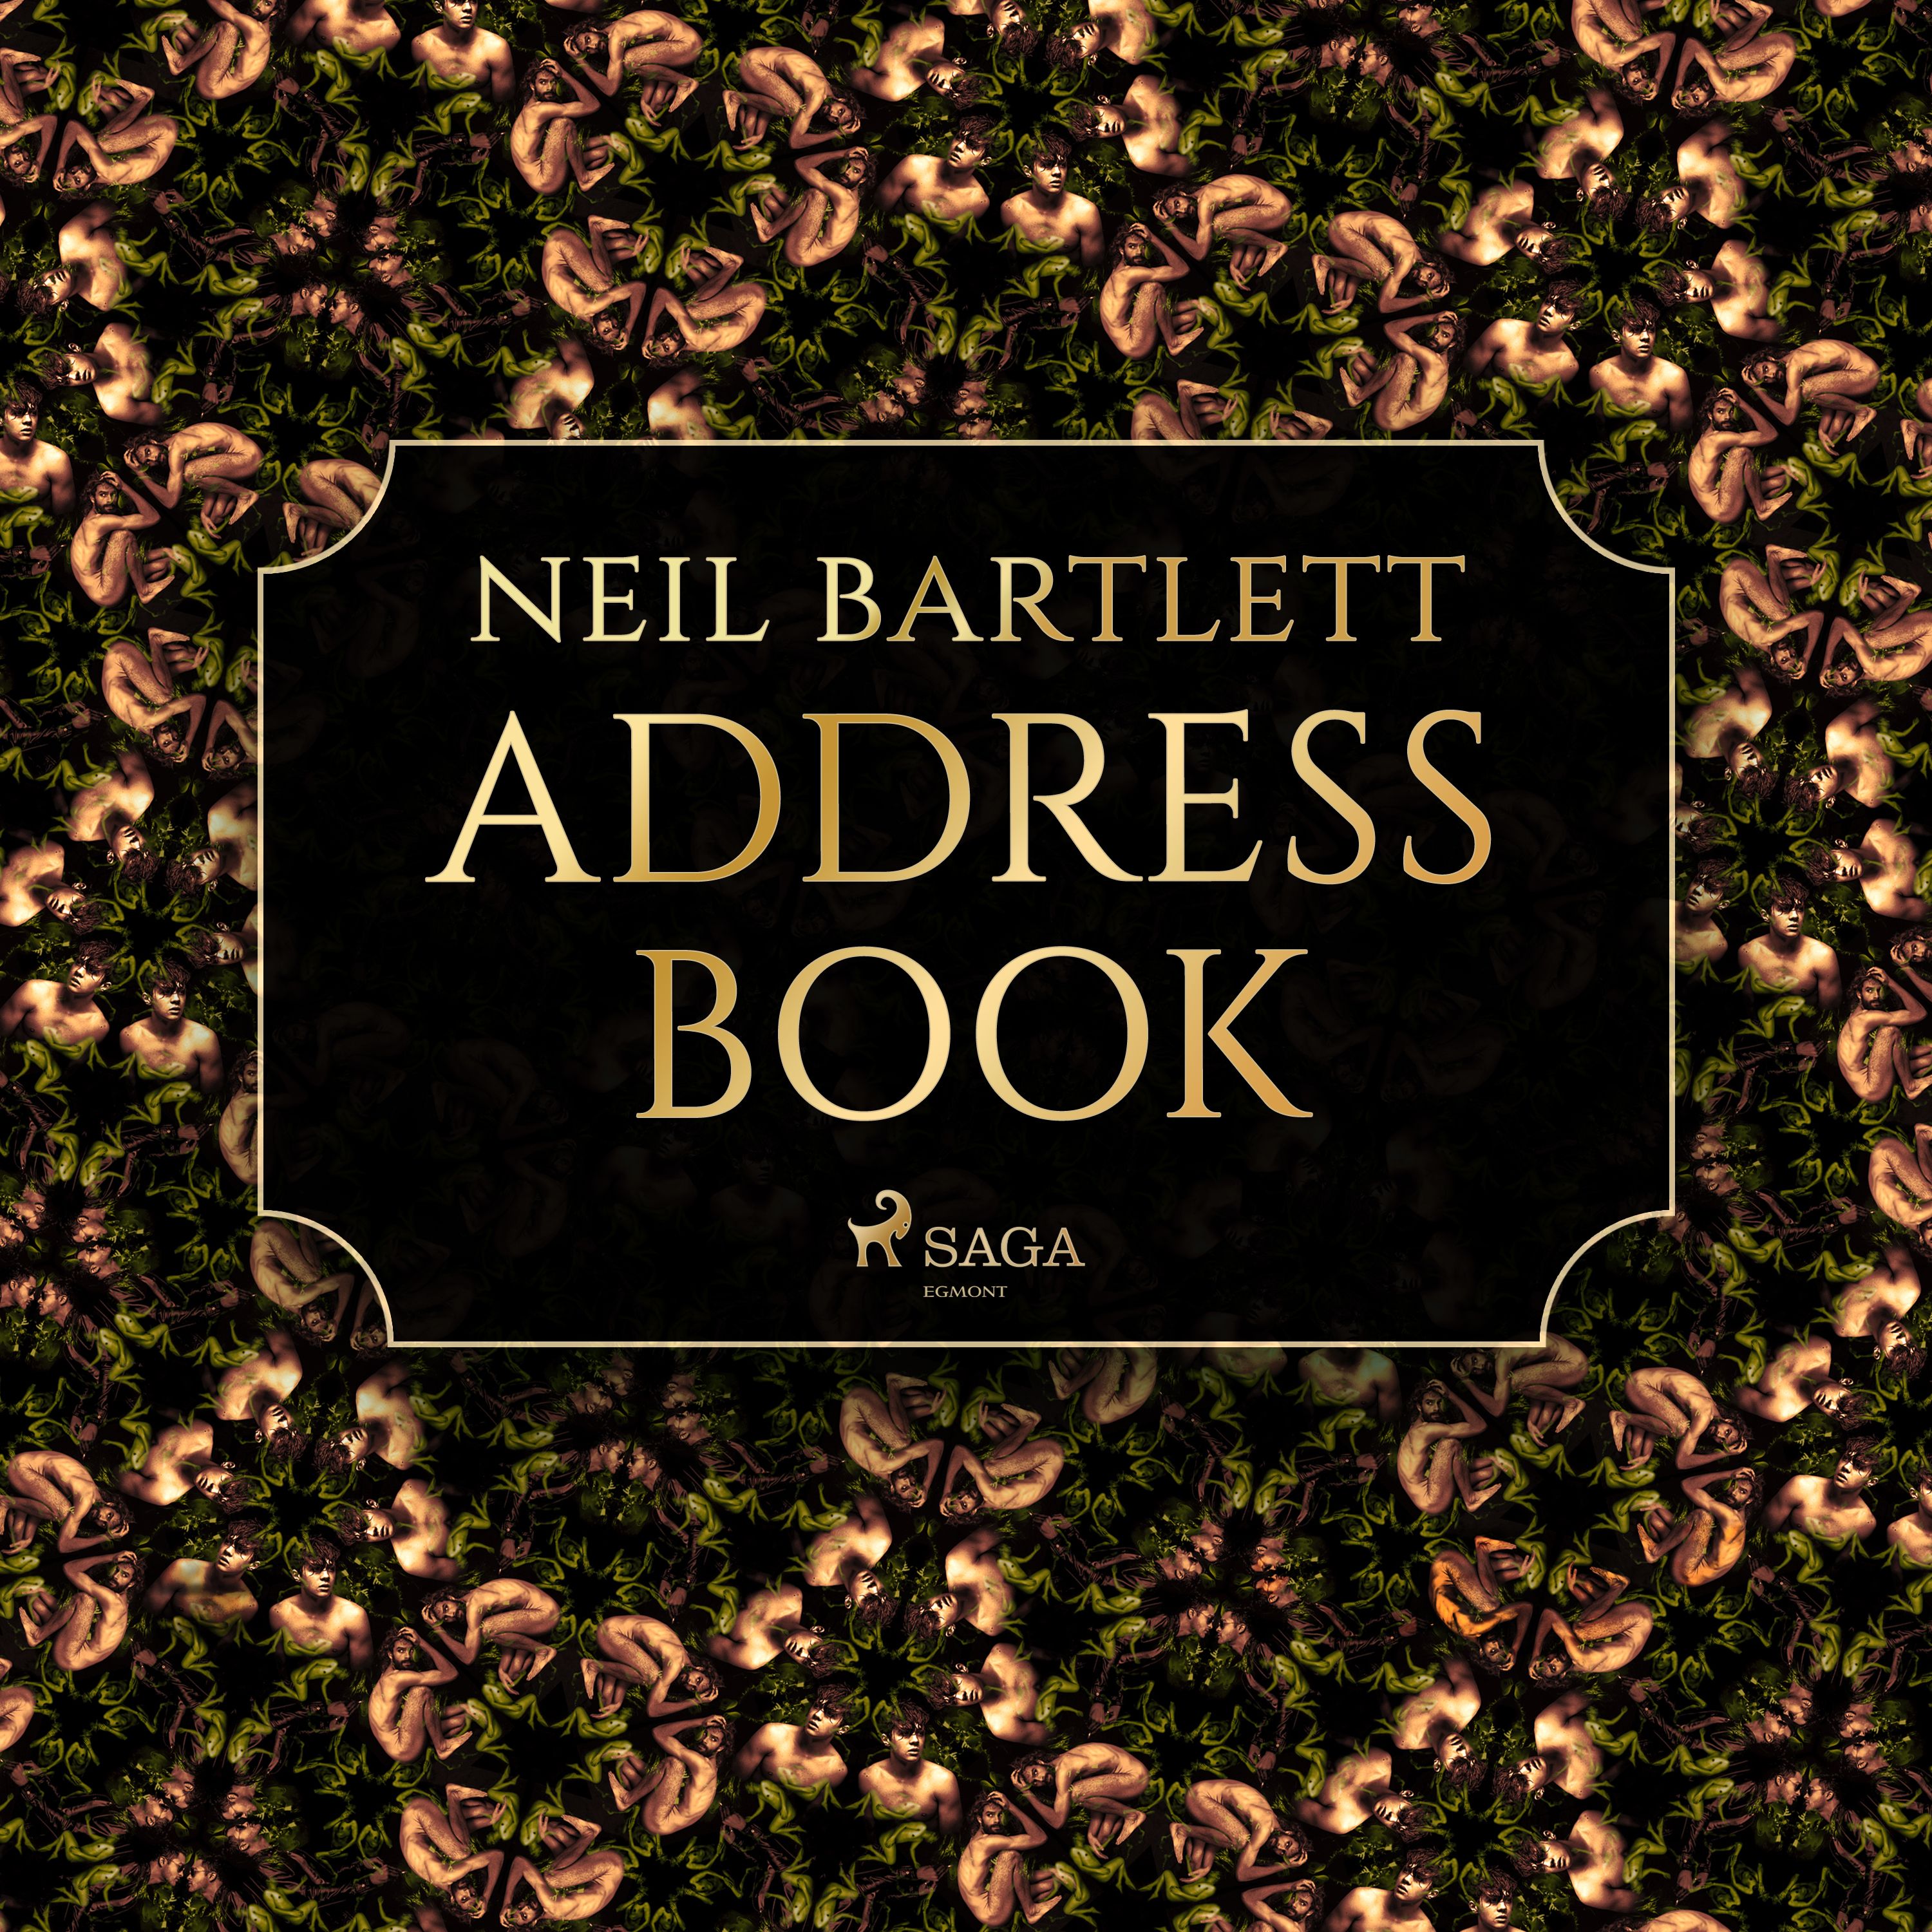 Address Book, ljudbok av Neil Bartlett